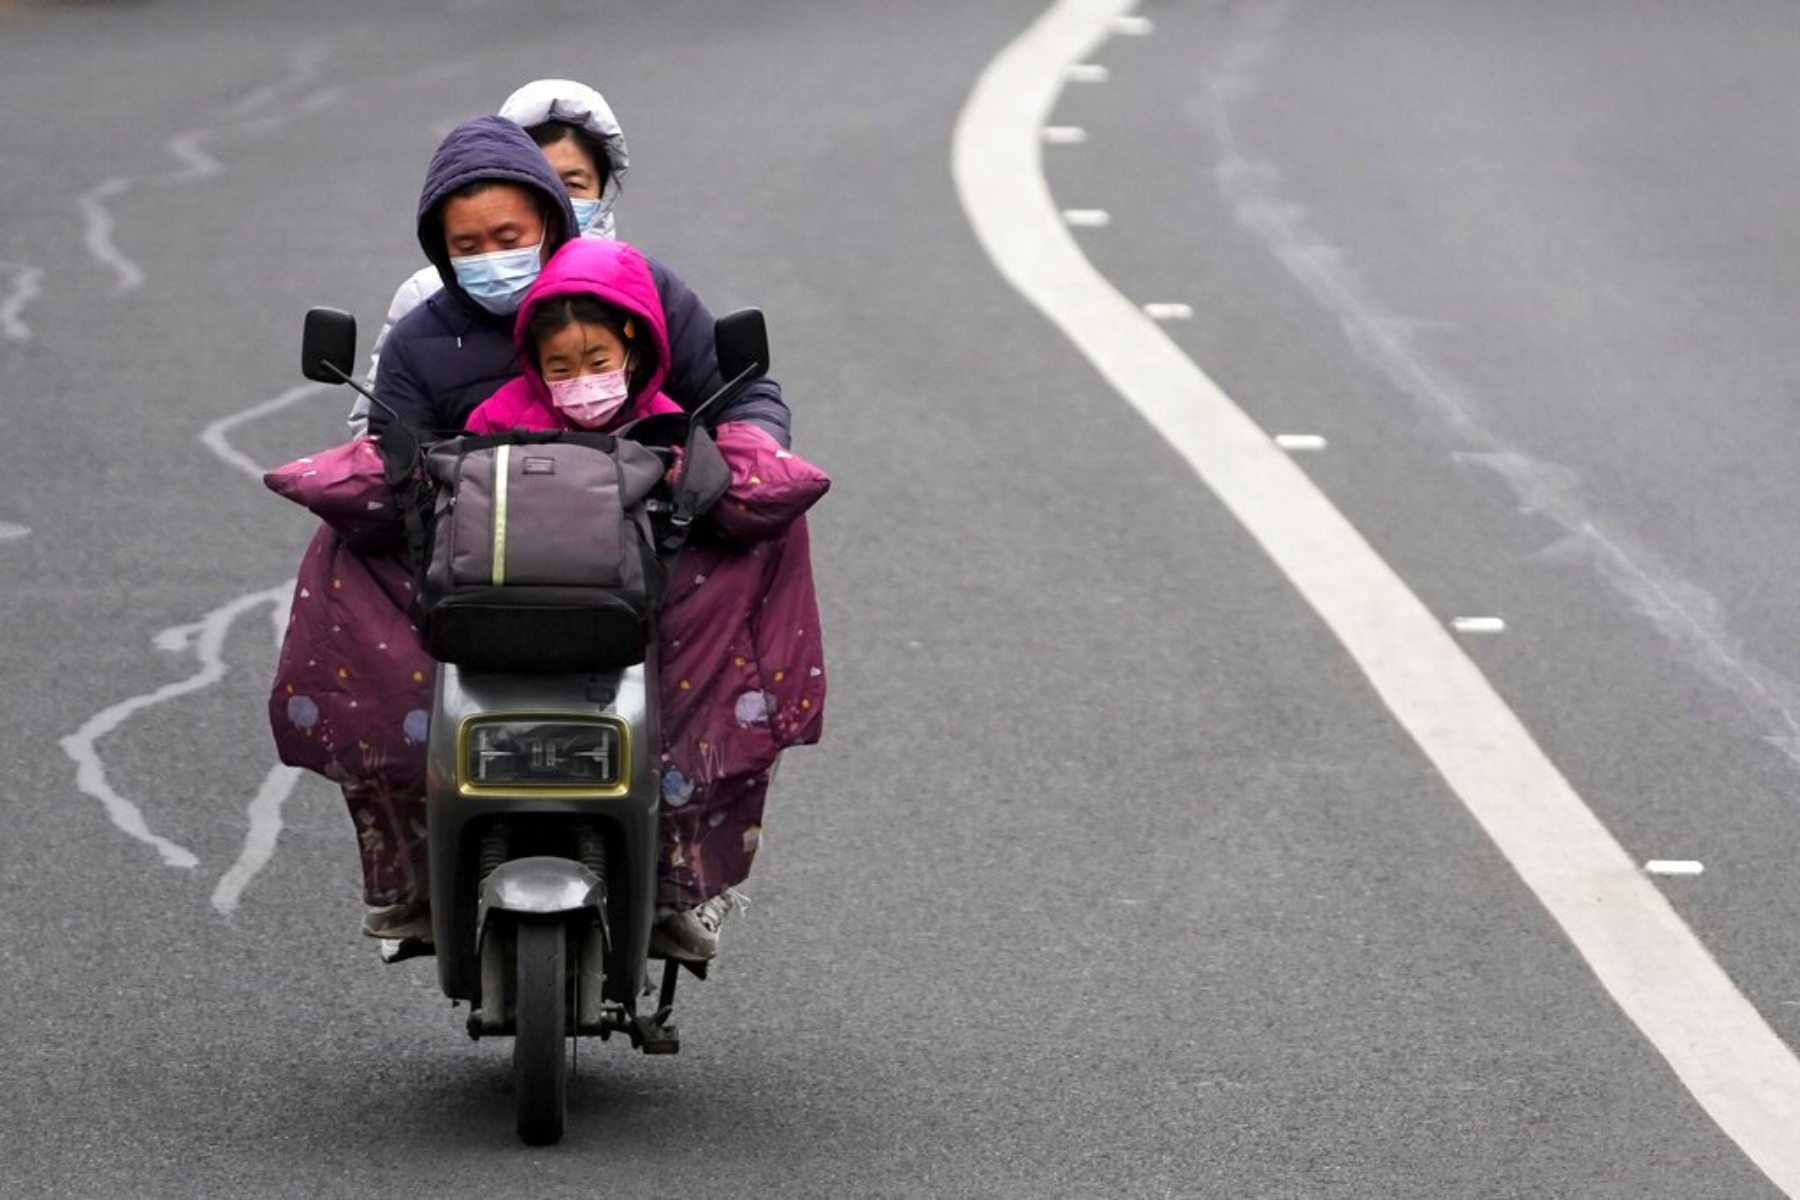 Σαγκάη καραντίνα: Χωρίζονται τα παιδιά που νοσούν από τους γονείς τους βάναυσα